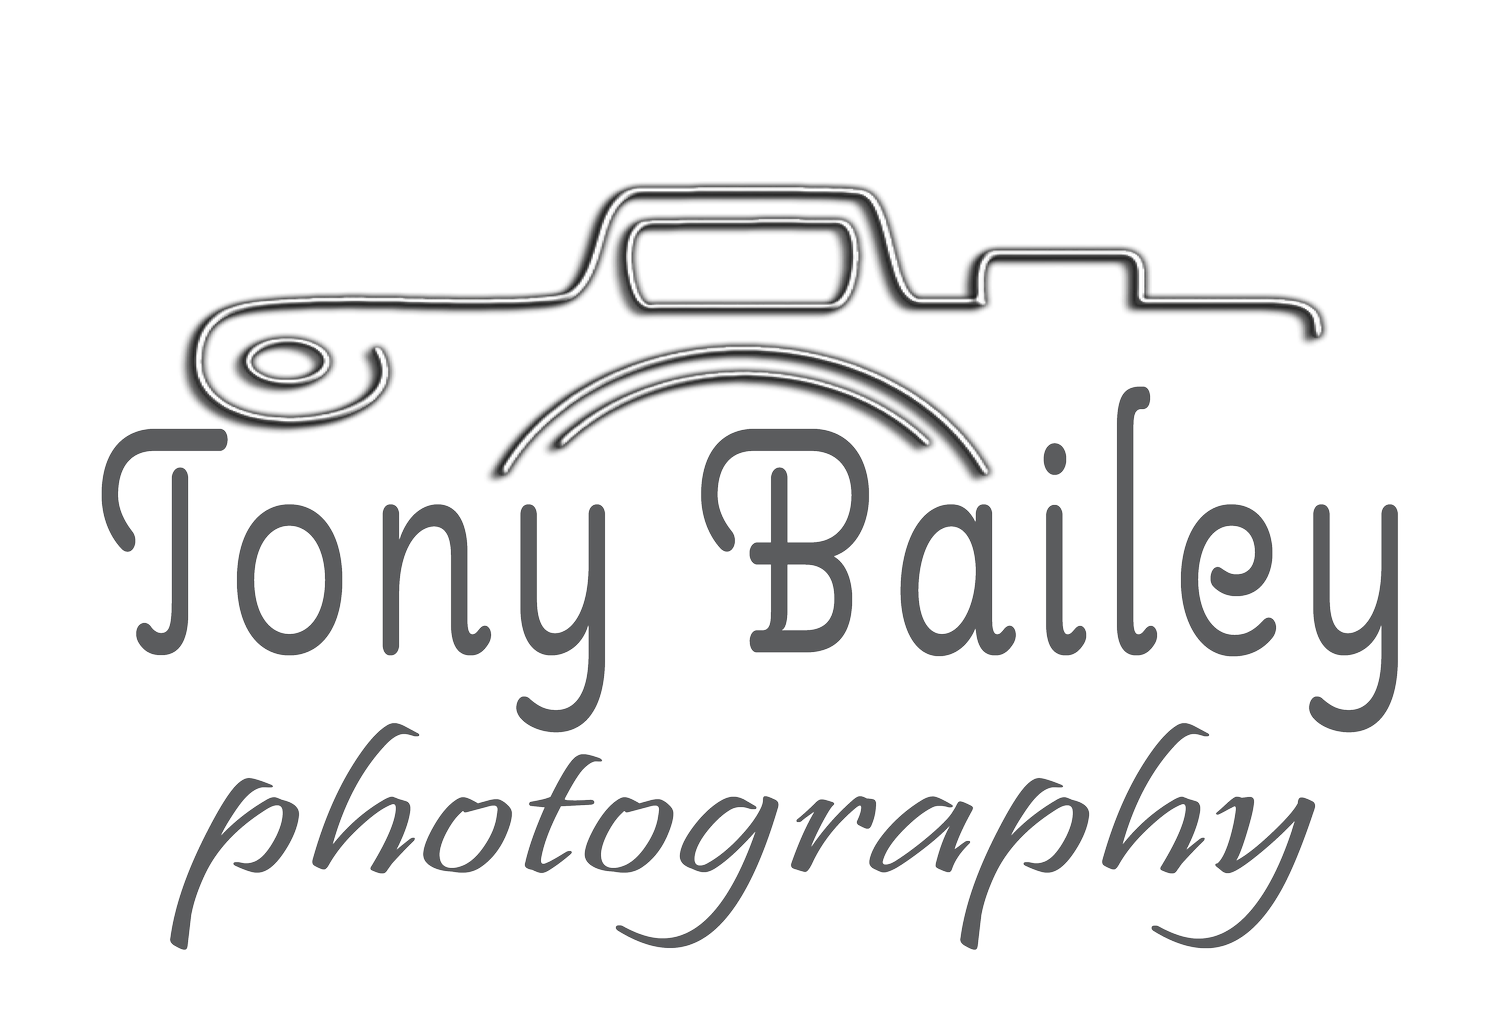 Tony Bailey Photography